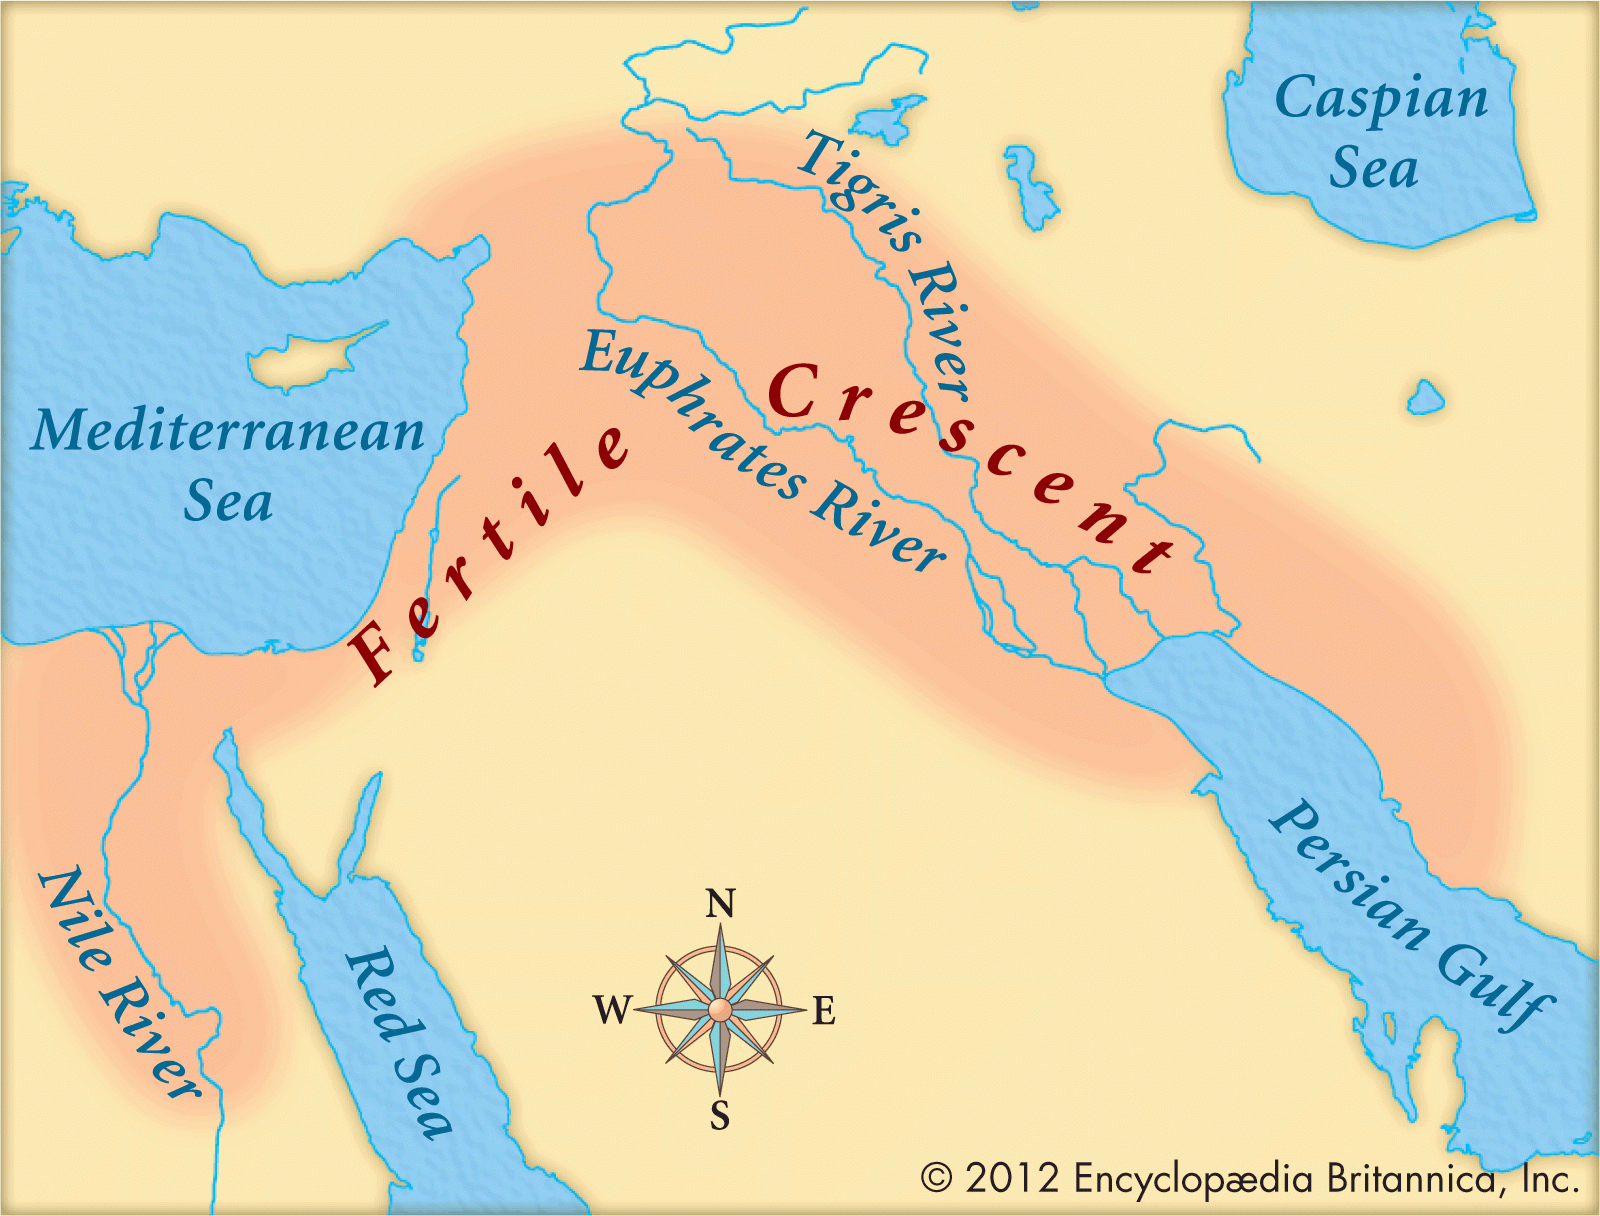 Free Printable Map Of Mesopotamia Free Printable